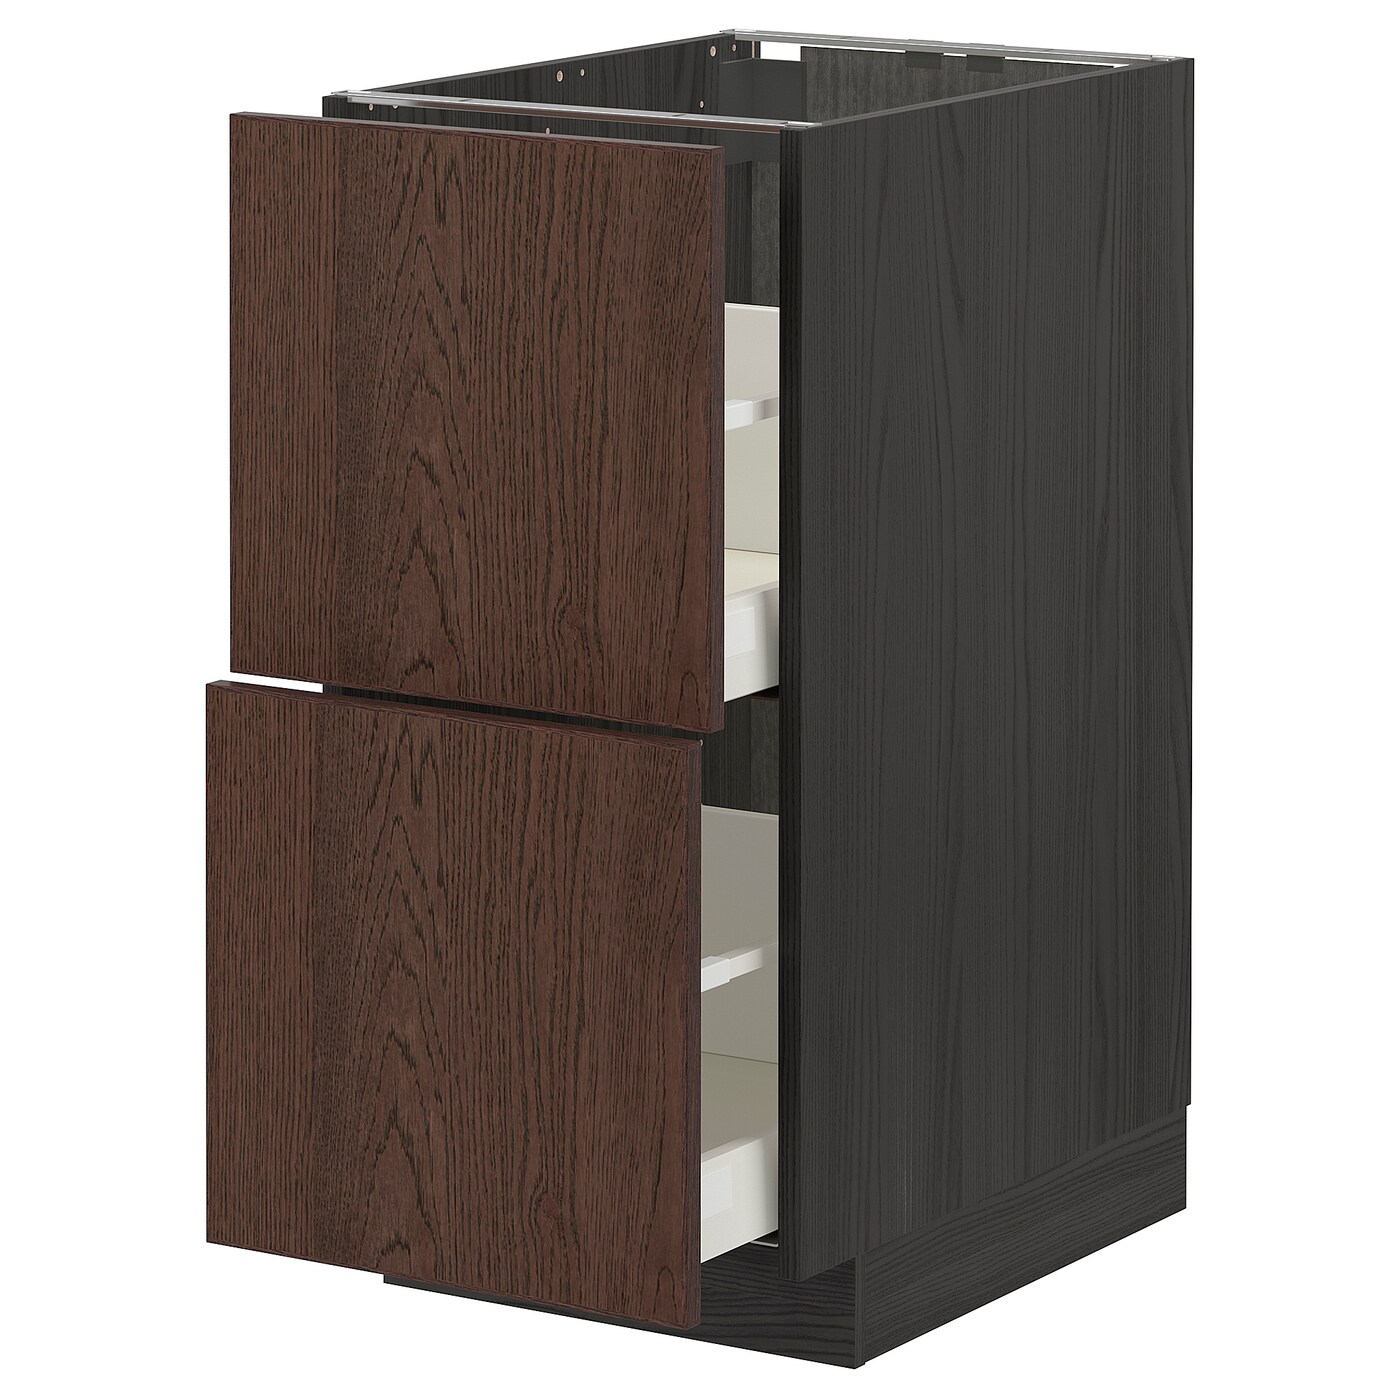 Напольный шкаф  - IKEA METOD MAXIMERA, 88x61,6x40см, черный/коричневый, МЕТОД МАКСИМЕРА ИКЕА